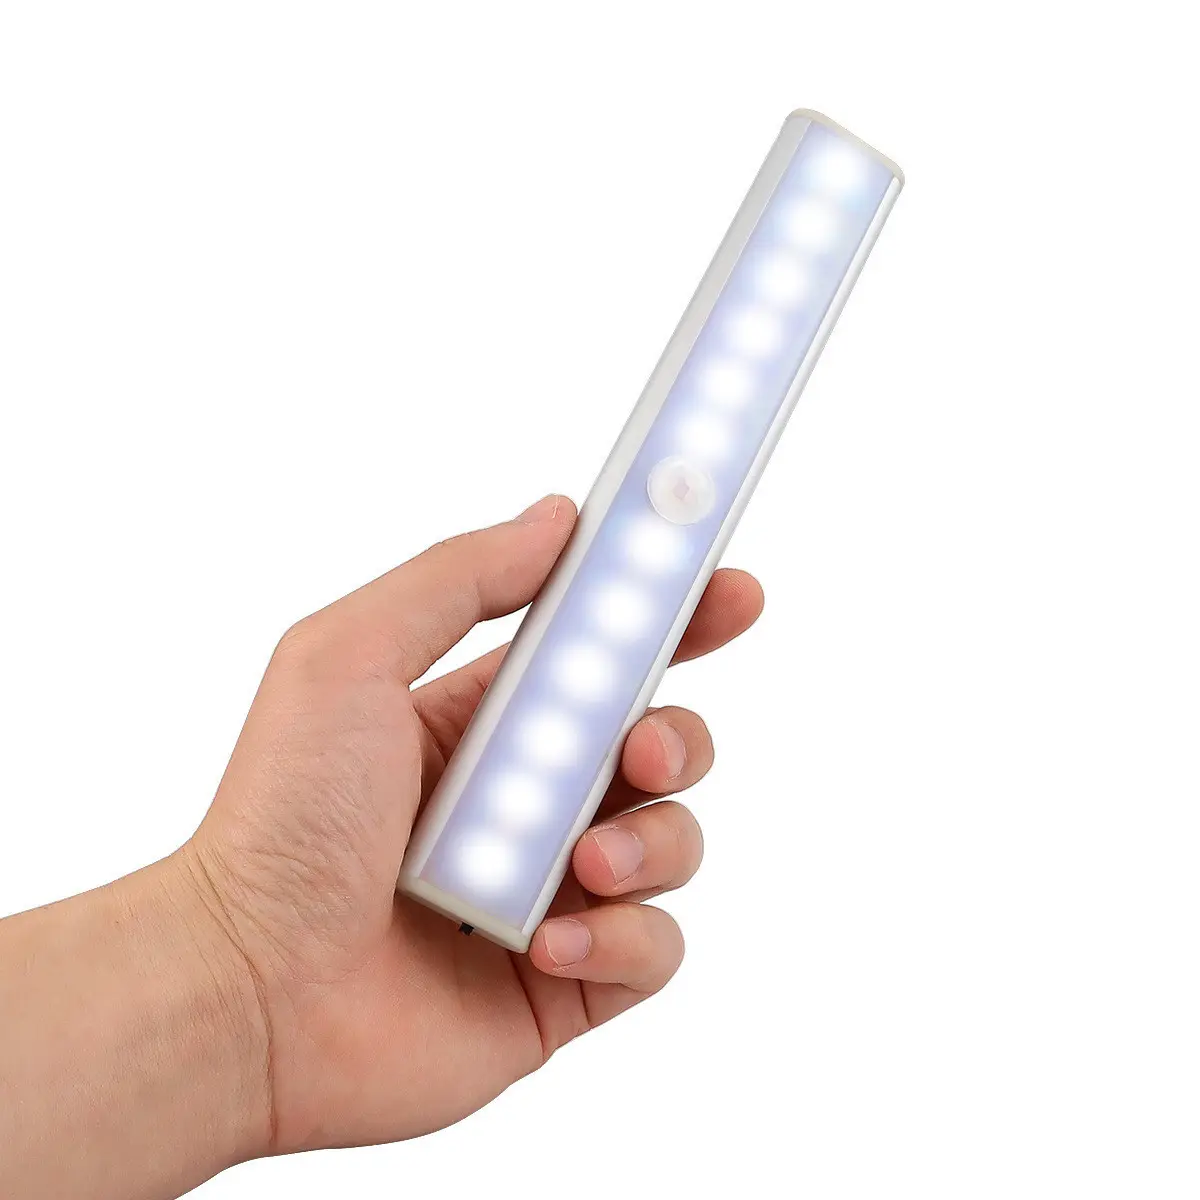 חיישן תנועת לילה אור מתוקים 10 LED ארון אורות נטענת אלחוטי קבינט תנועת גלאי קיר מנורה